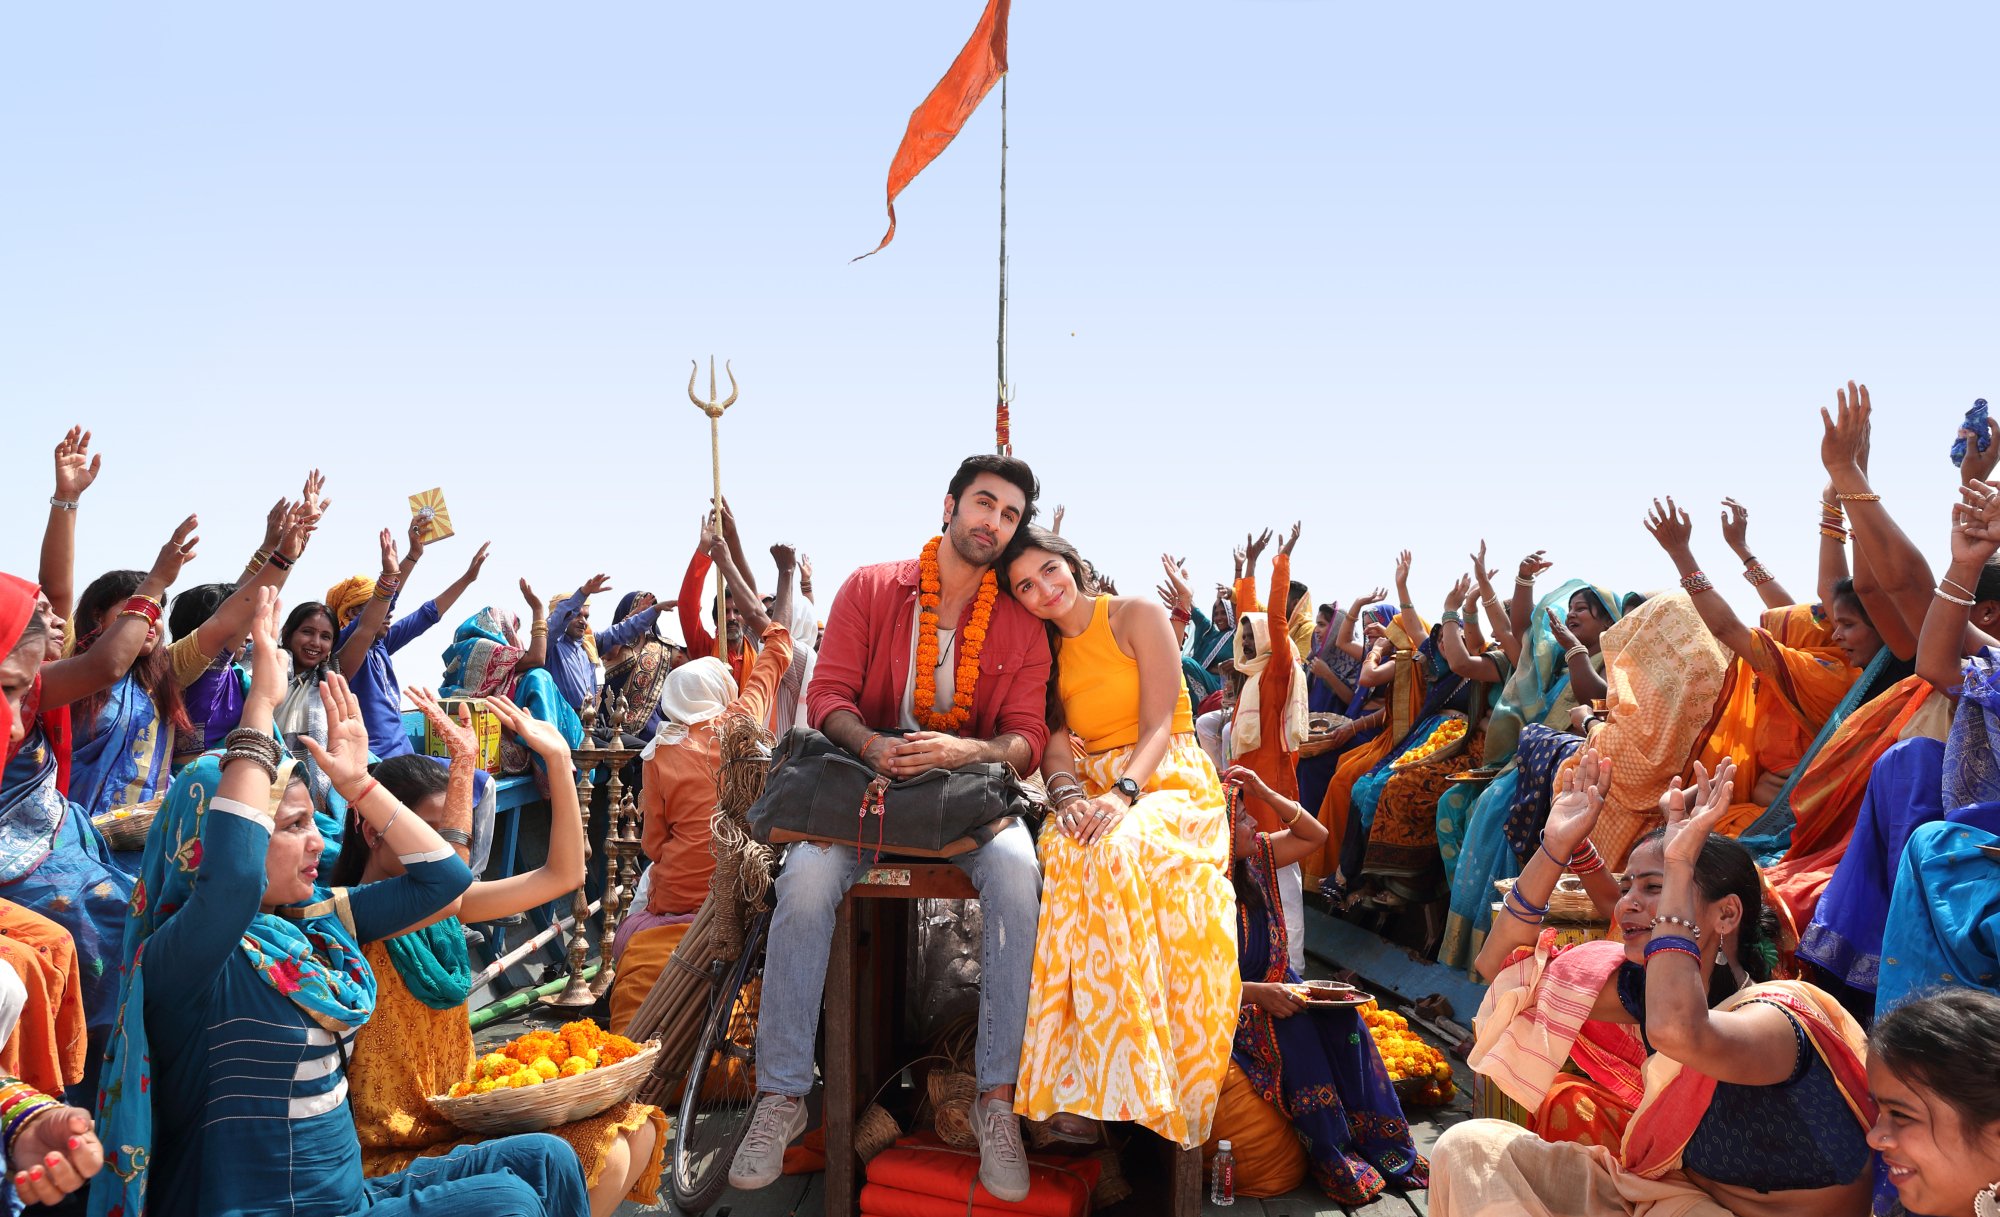 Alia Bhatt and Ranbir Kapoor in a still from the movie.